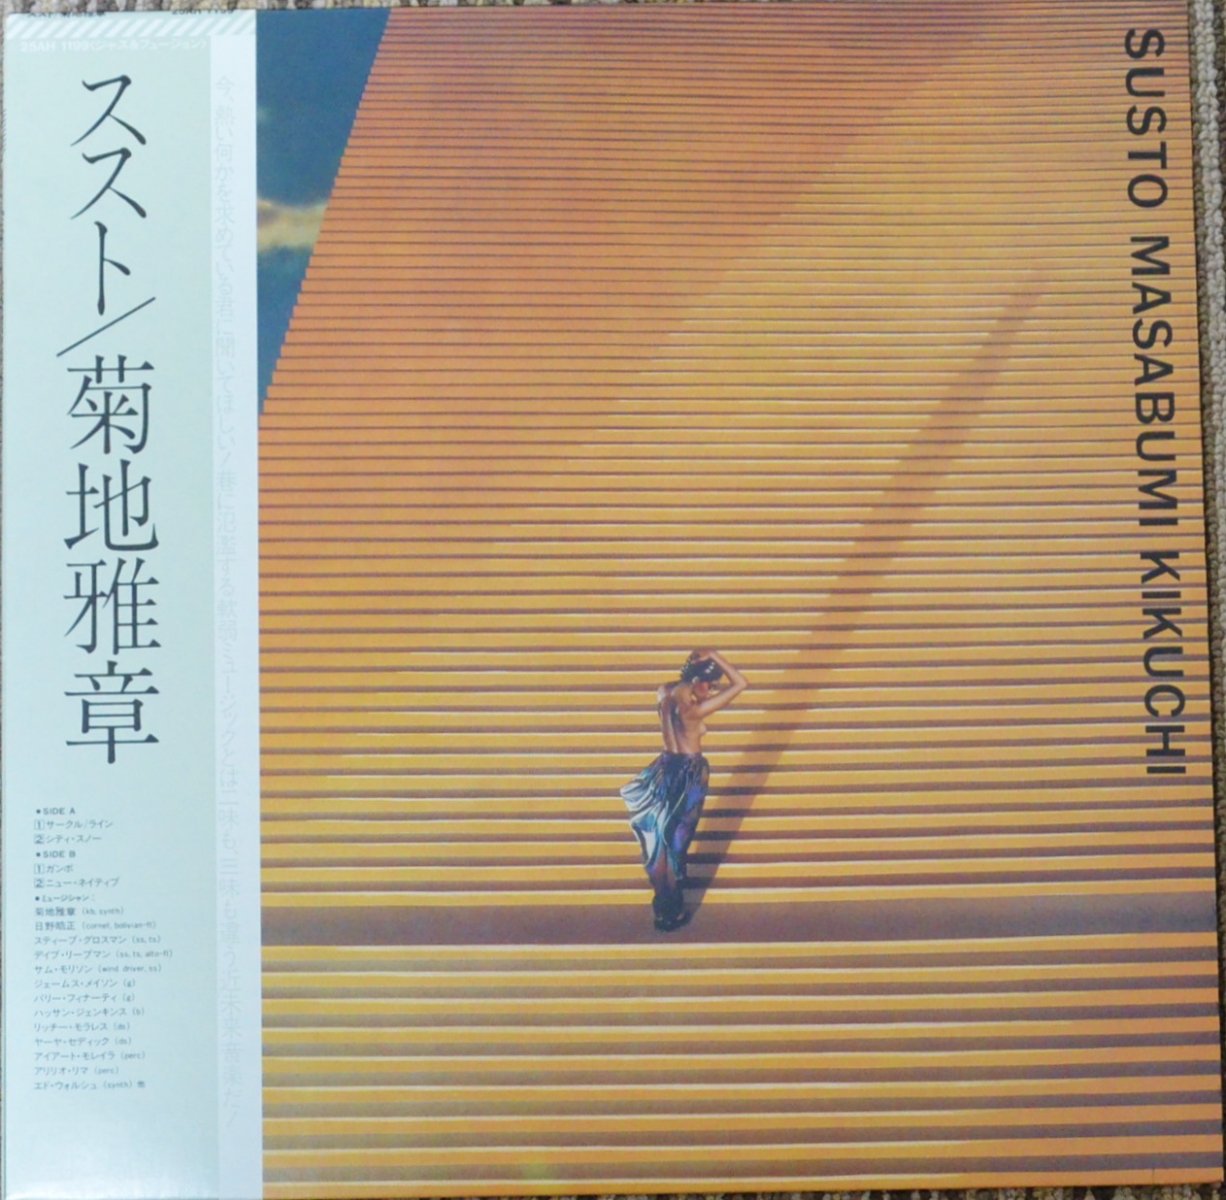 菊地雅章 MASABUMI KIKUCHI / ススト SUSTO (LP) - HIP TANK RECORDS